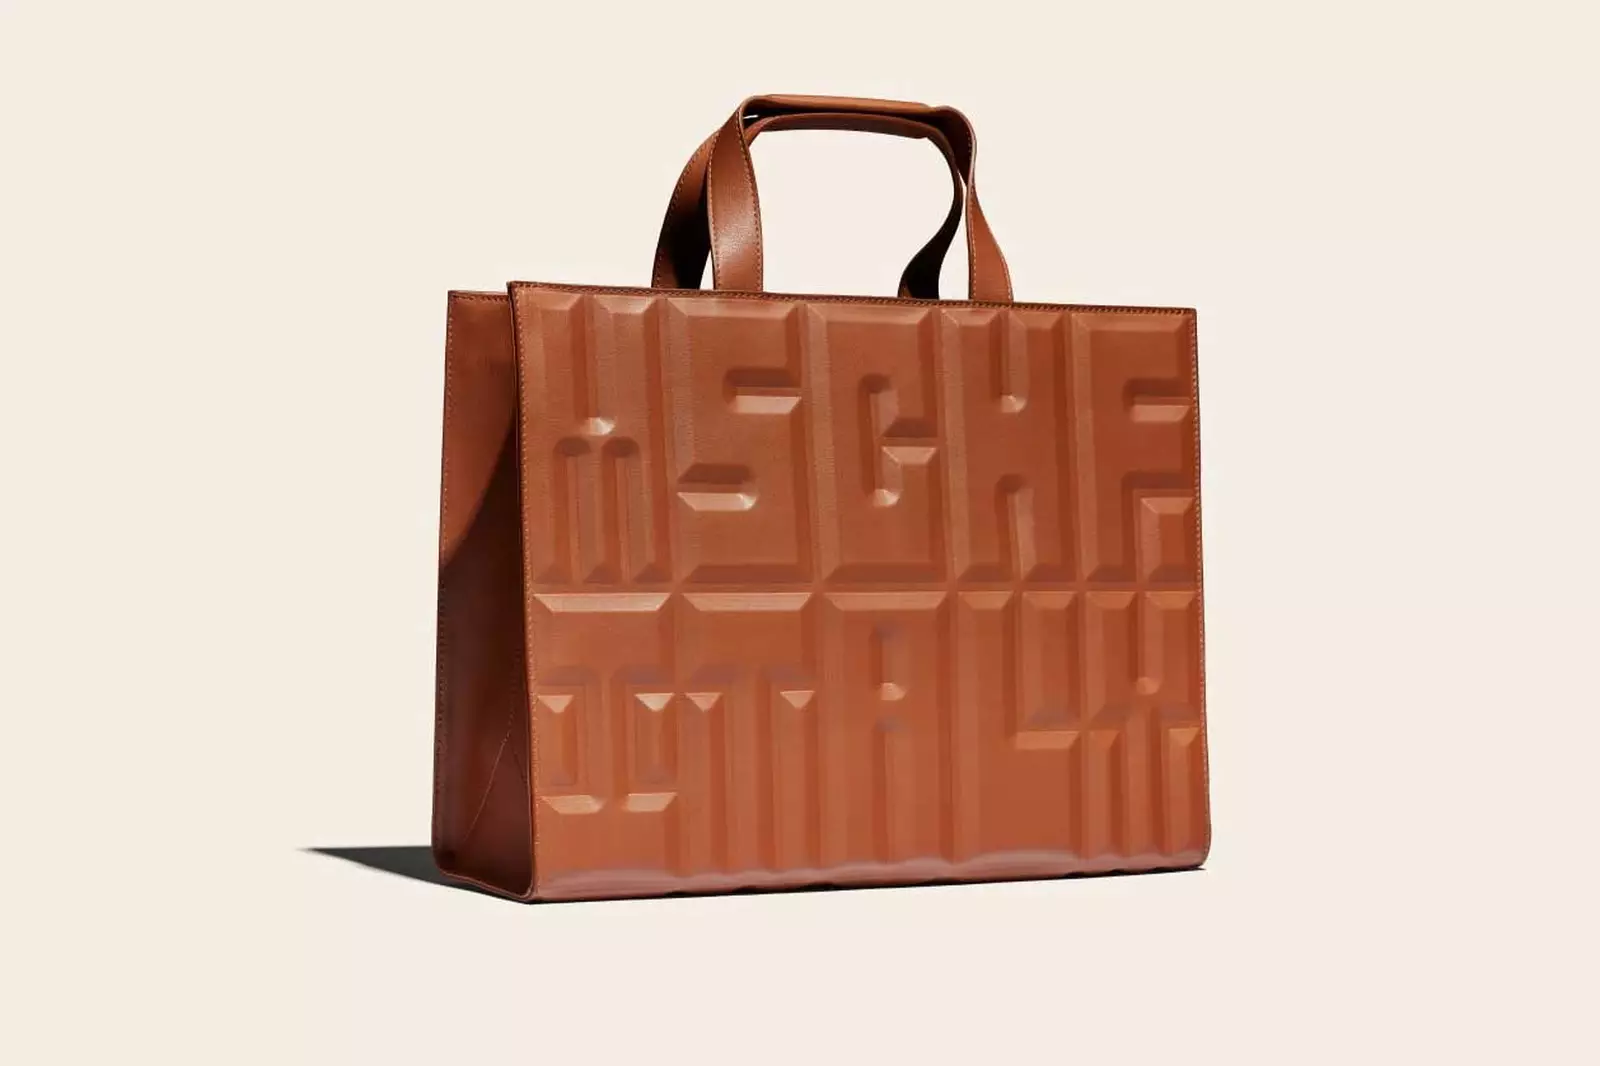 Art collective MSCHF releasing microscopic bootleg Louis Vuitton handbag